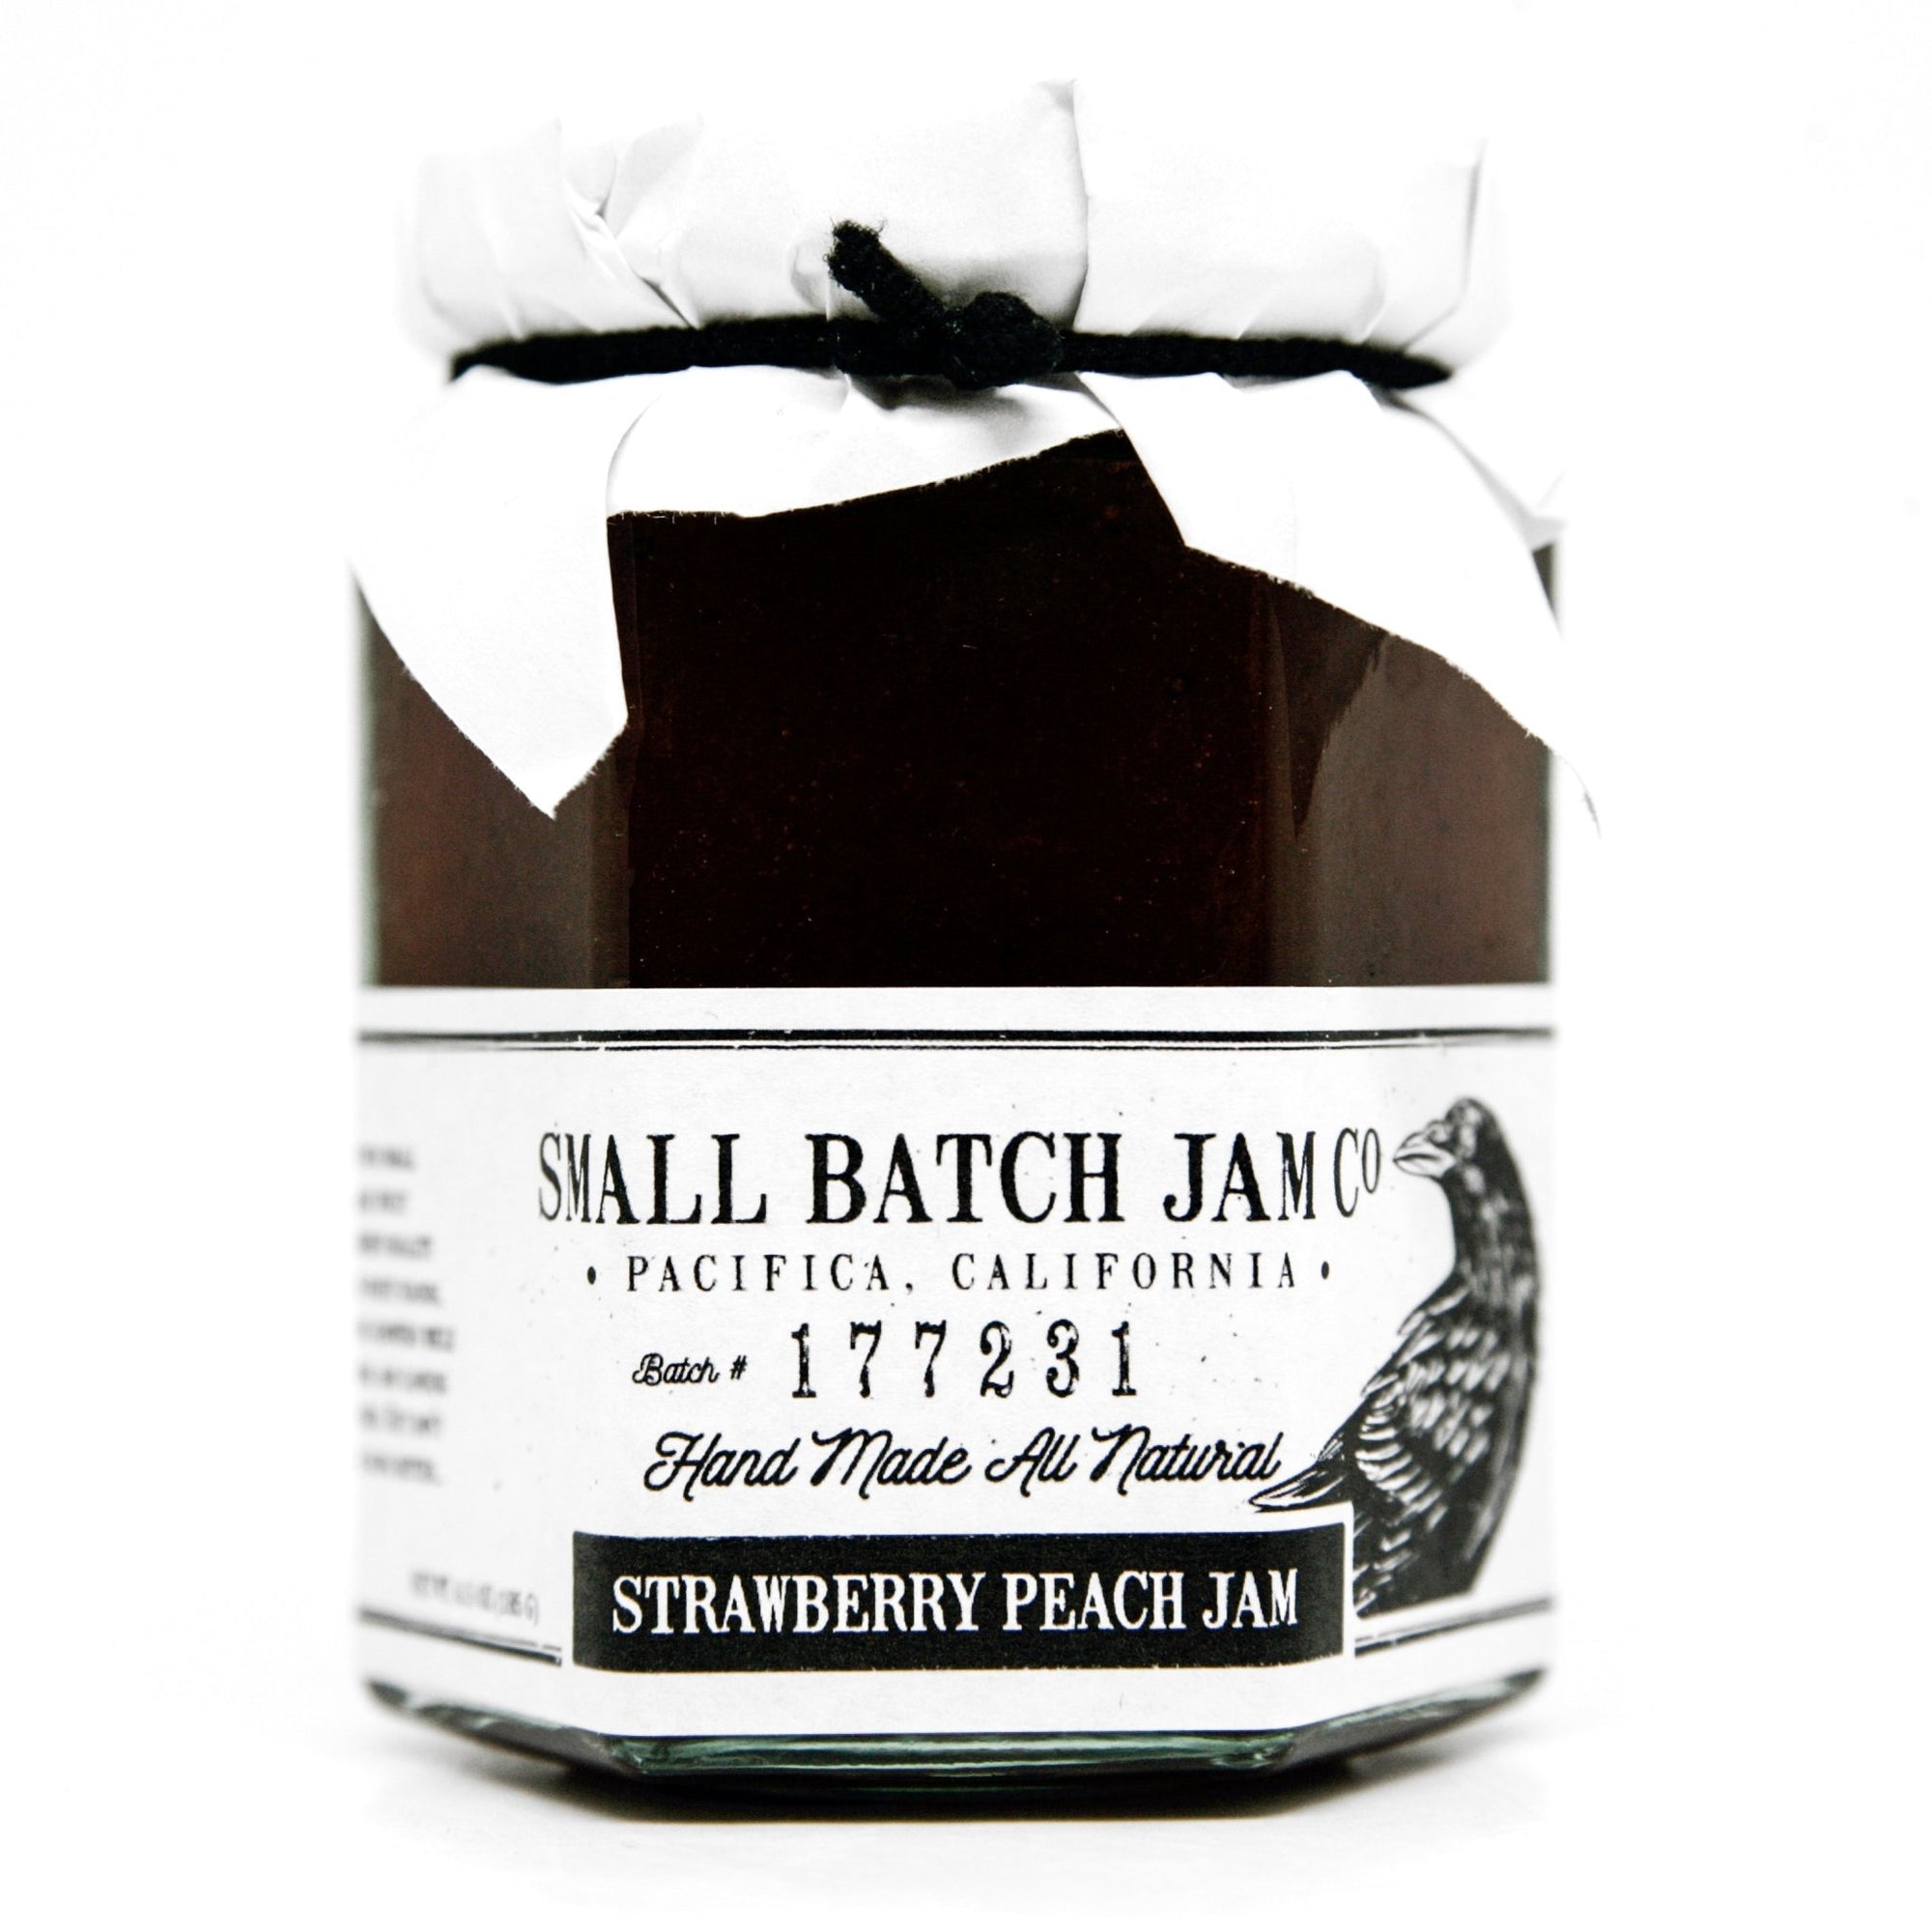 Strawberry Peach Jam - Small Batch Jam Co